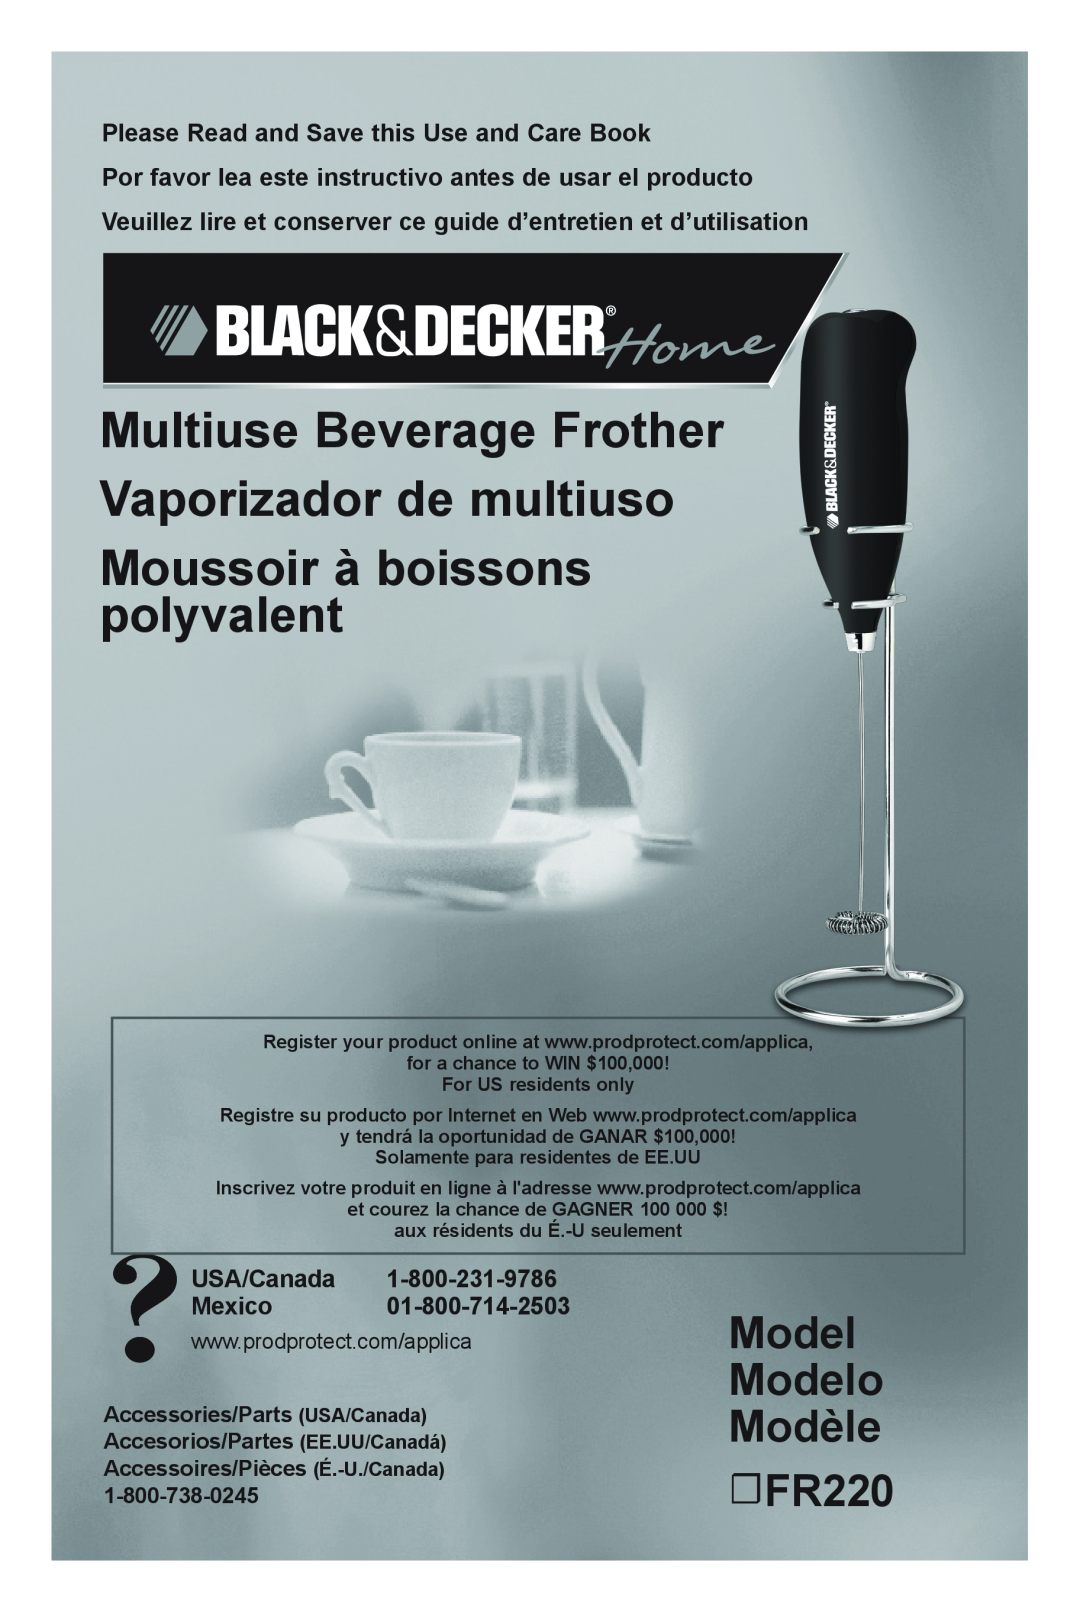 Black & Decker manual Model Modelo Modèle FR220, Moussoir à boissons polyvalent, USA/Canada Mexico 